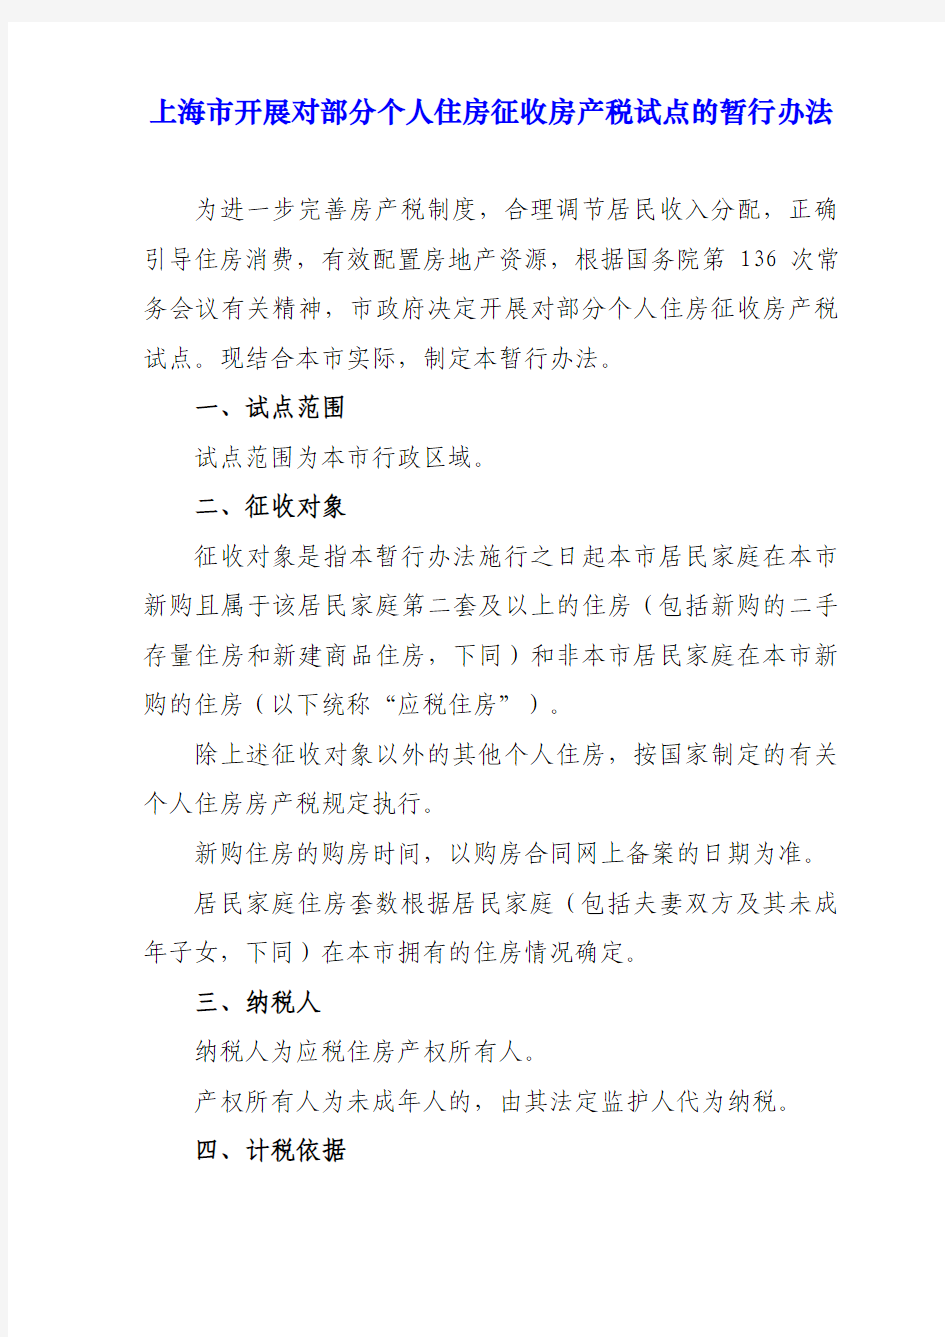 上海、重庆房产税试点文件